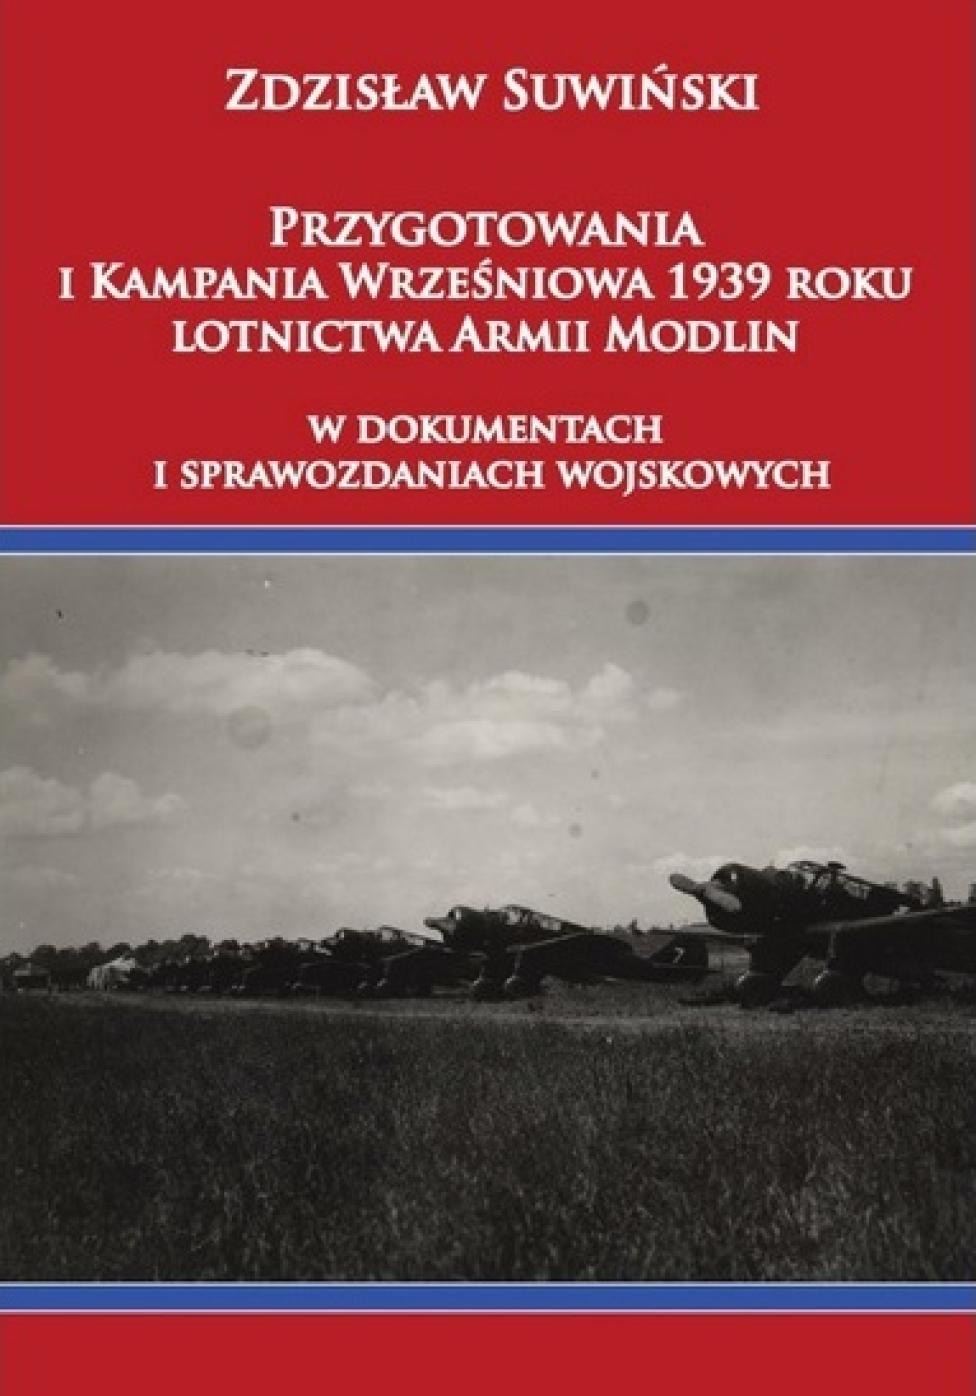 Książka "Przygotowania i Kampania Wrześniowa 1939 roku lotnictwa Armii Modlin w dokumentach i sprawozdaniach wojskowych"